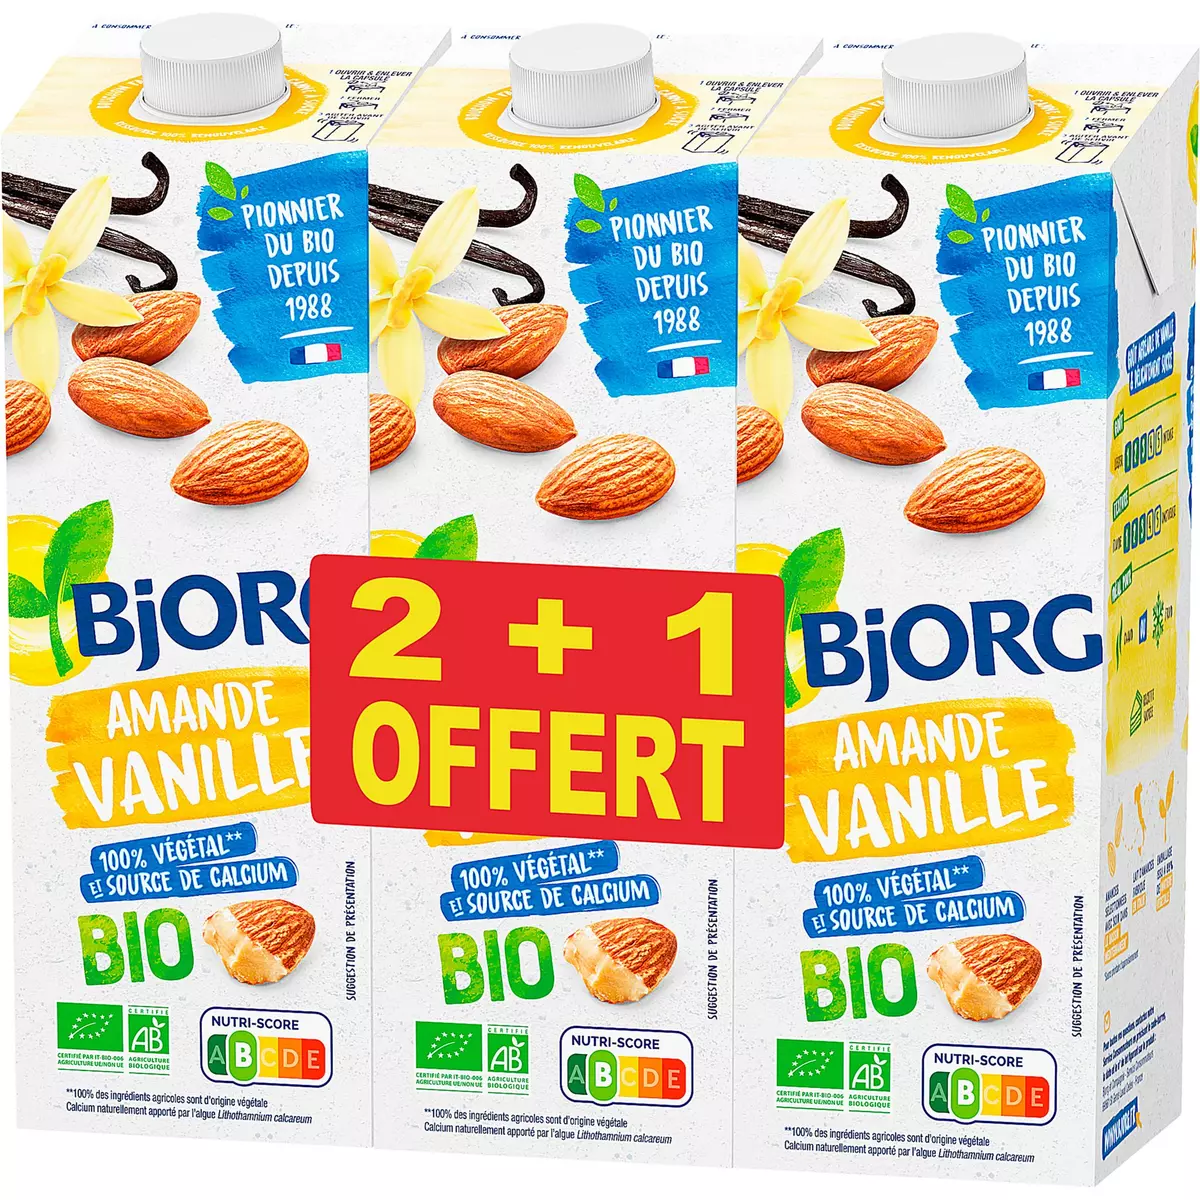 BJORG Boisson aux amandes et à la vanille bio 2l+1l offert